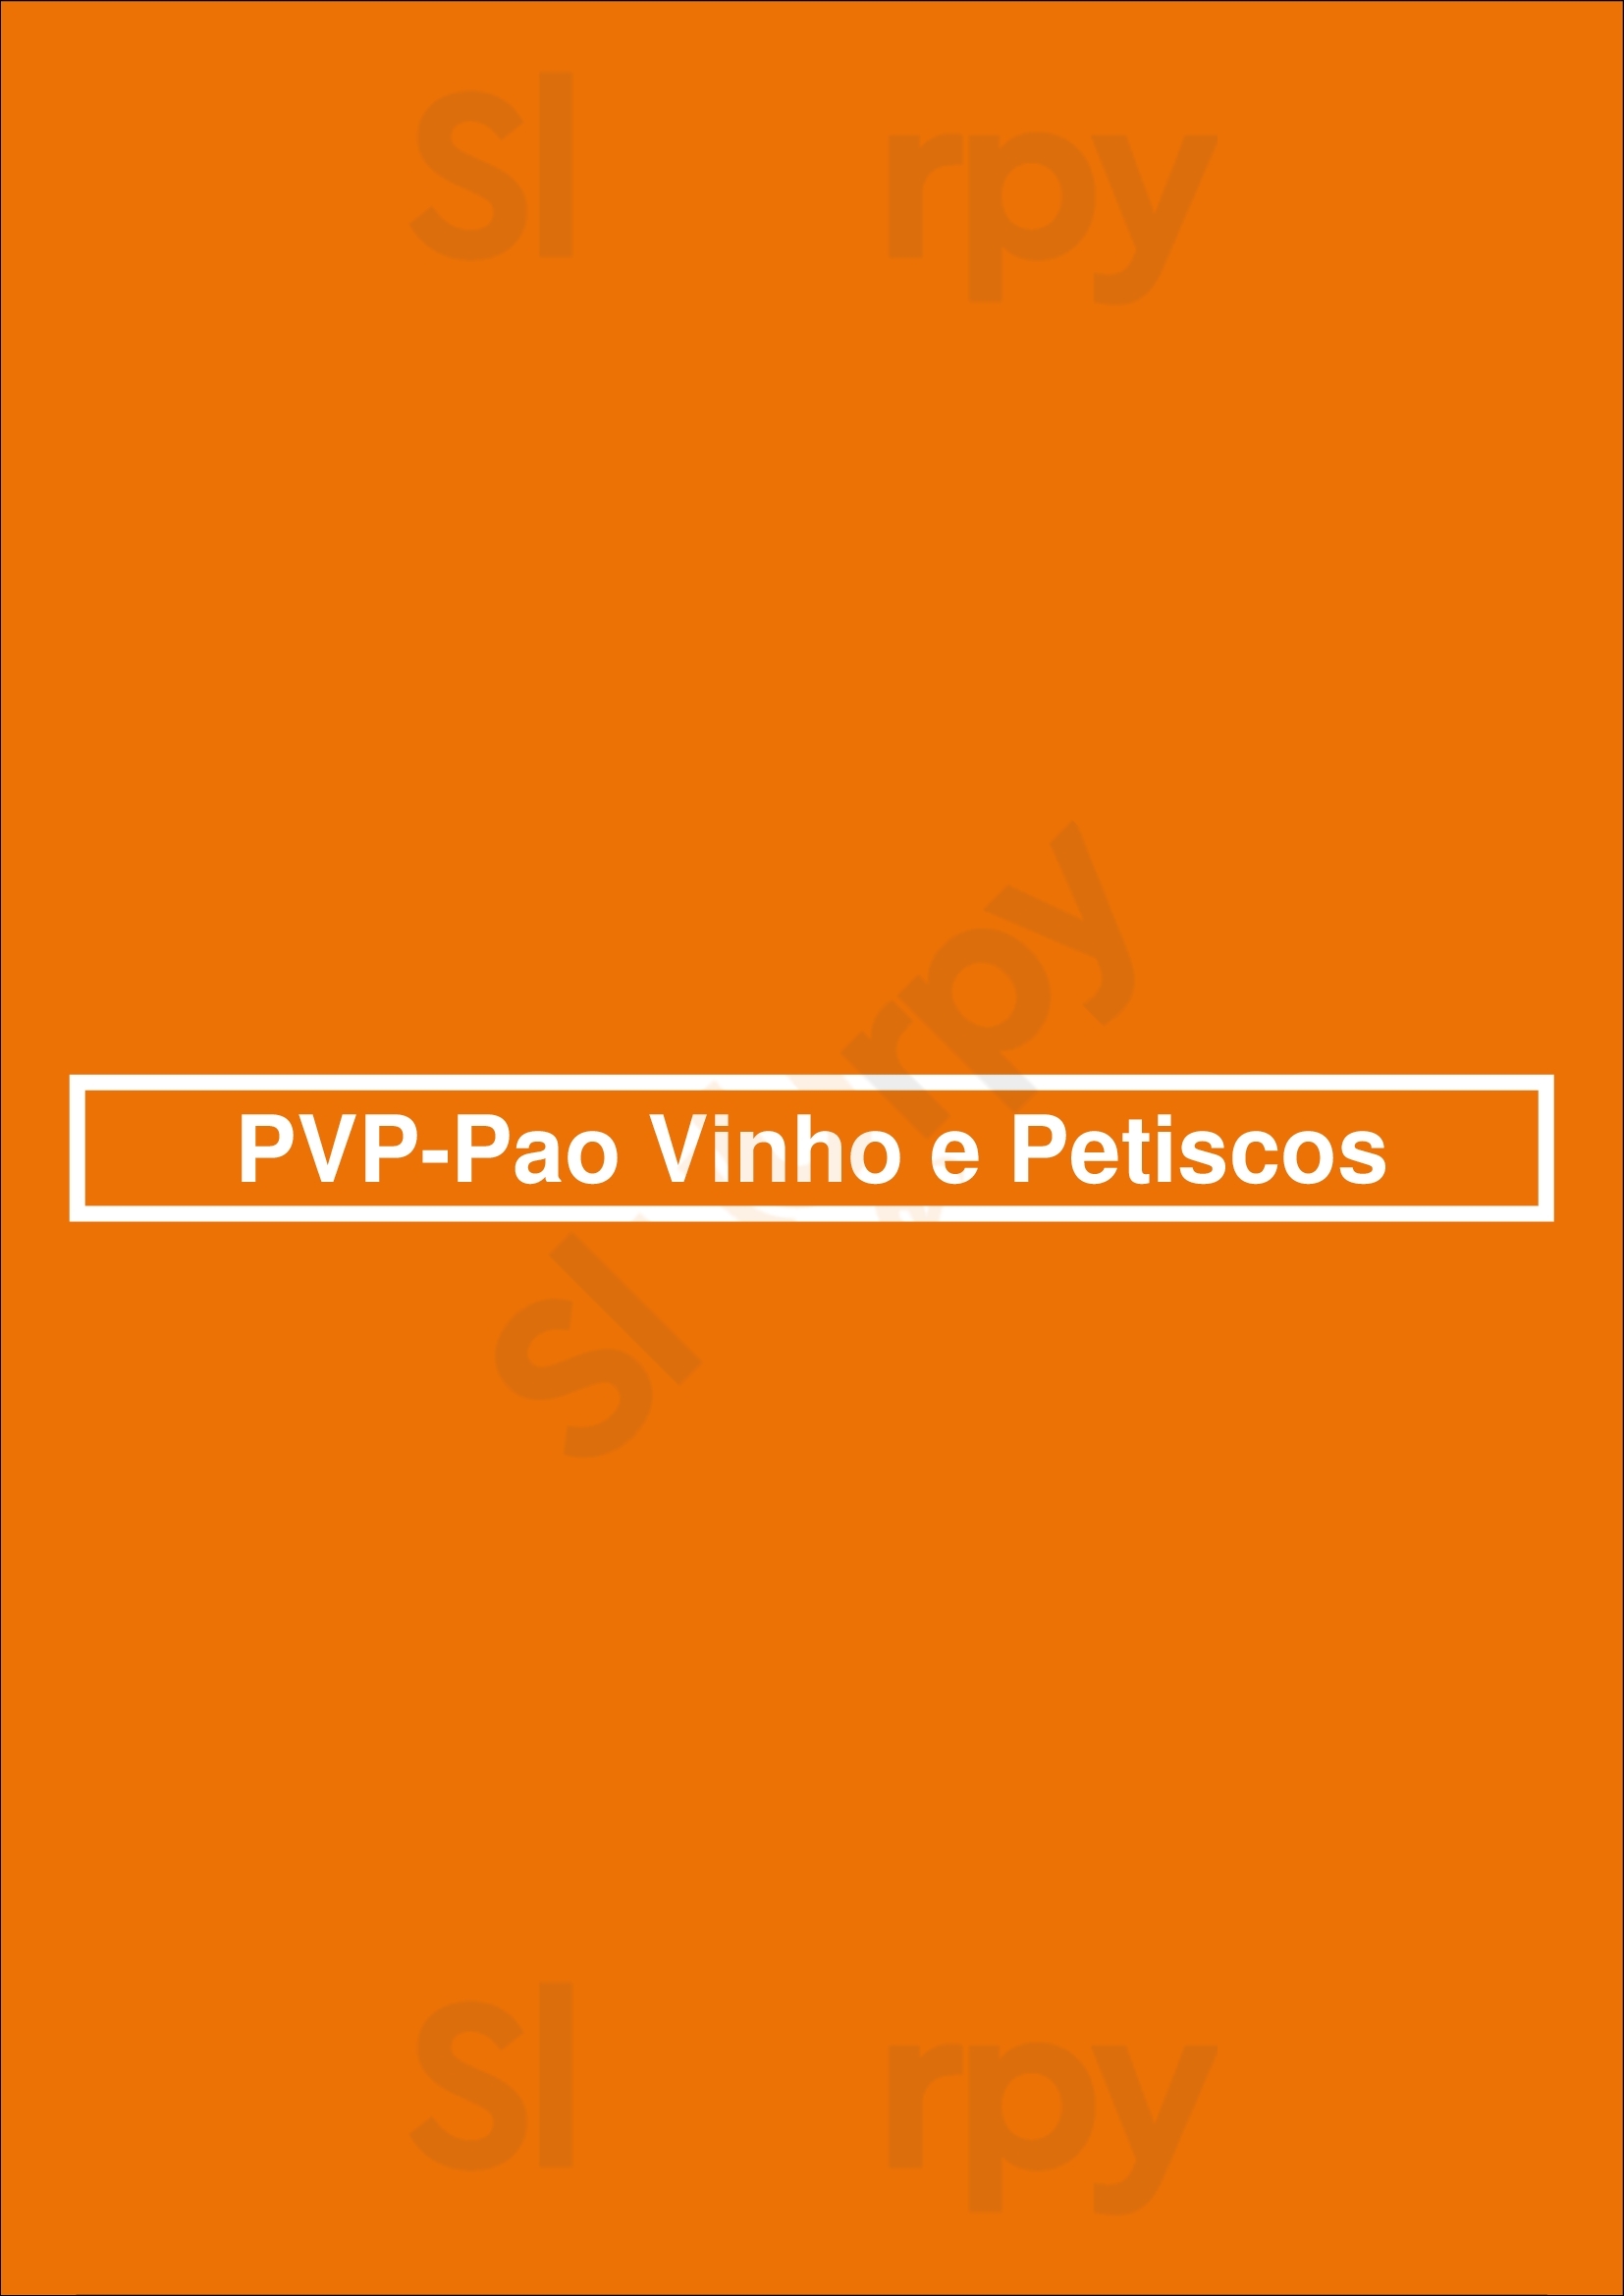 Pvp - Pao Vinho E Petiscos Funchal Menu - 1